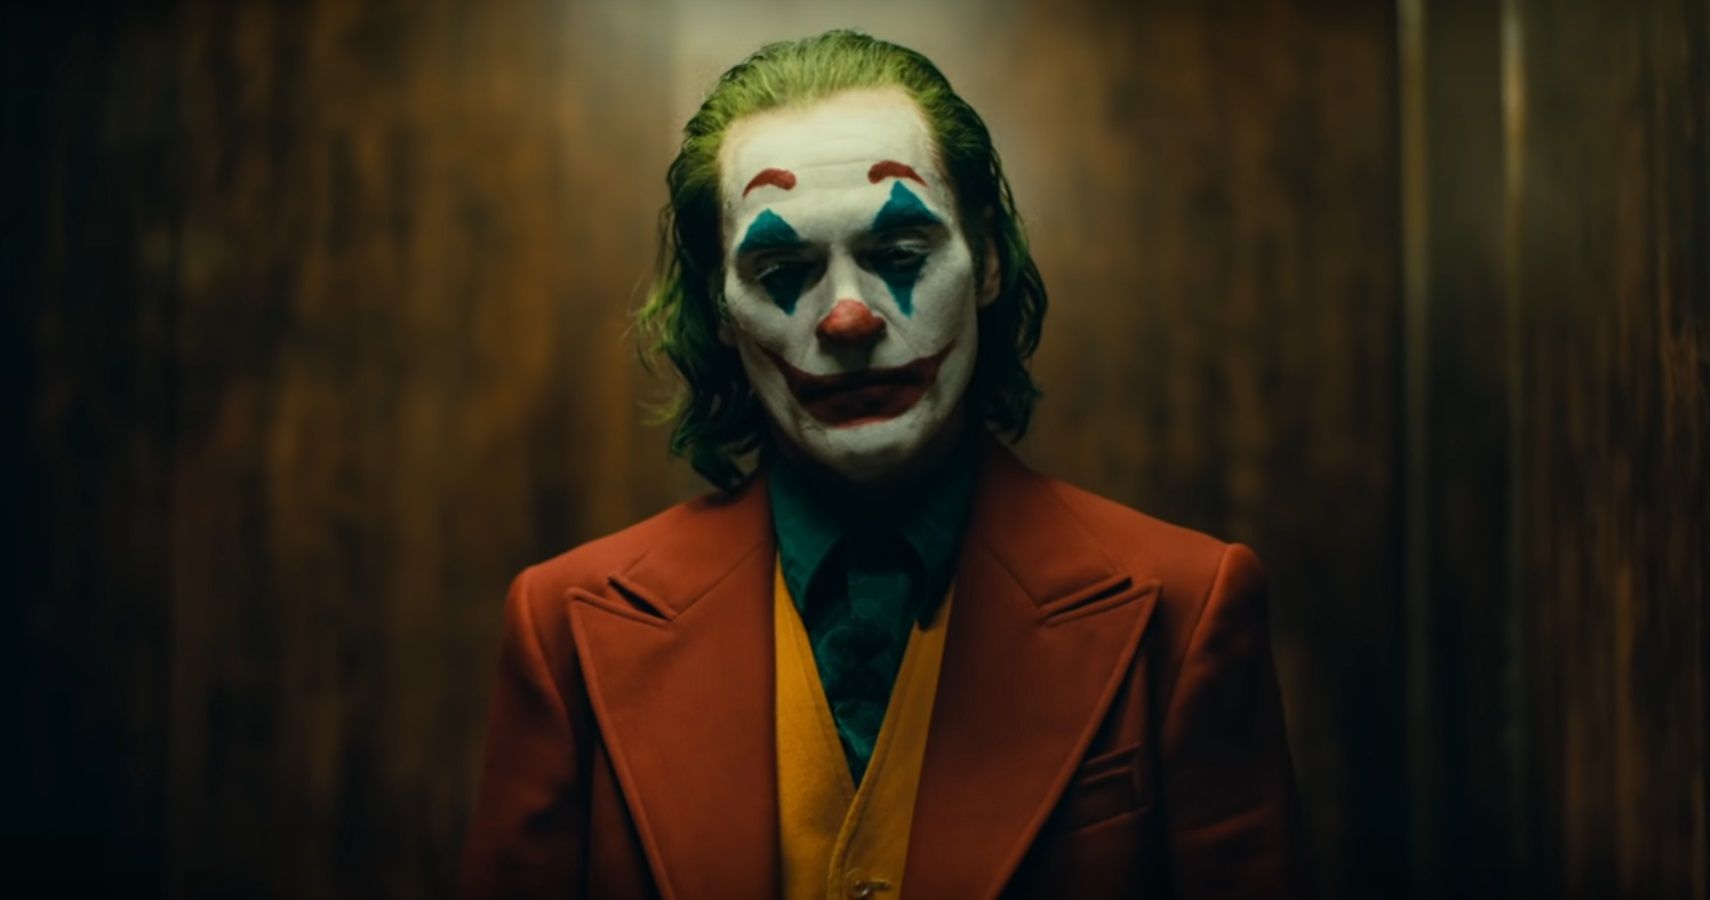 Joker Joaquin Phoenix in makeup